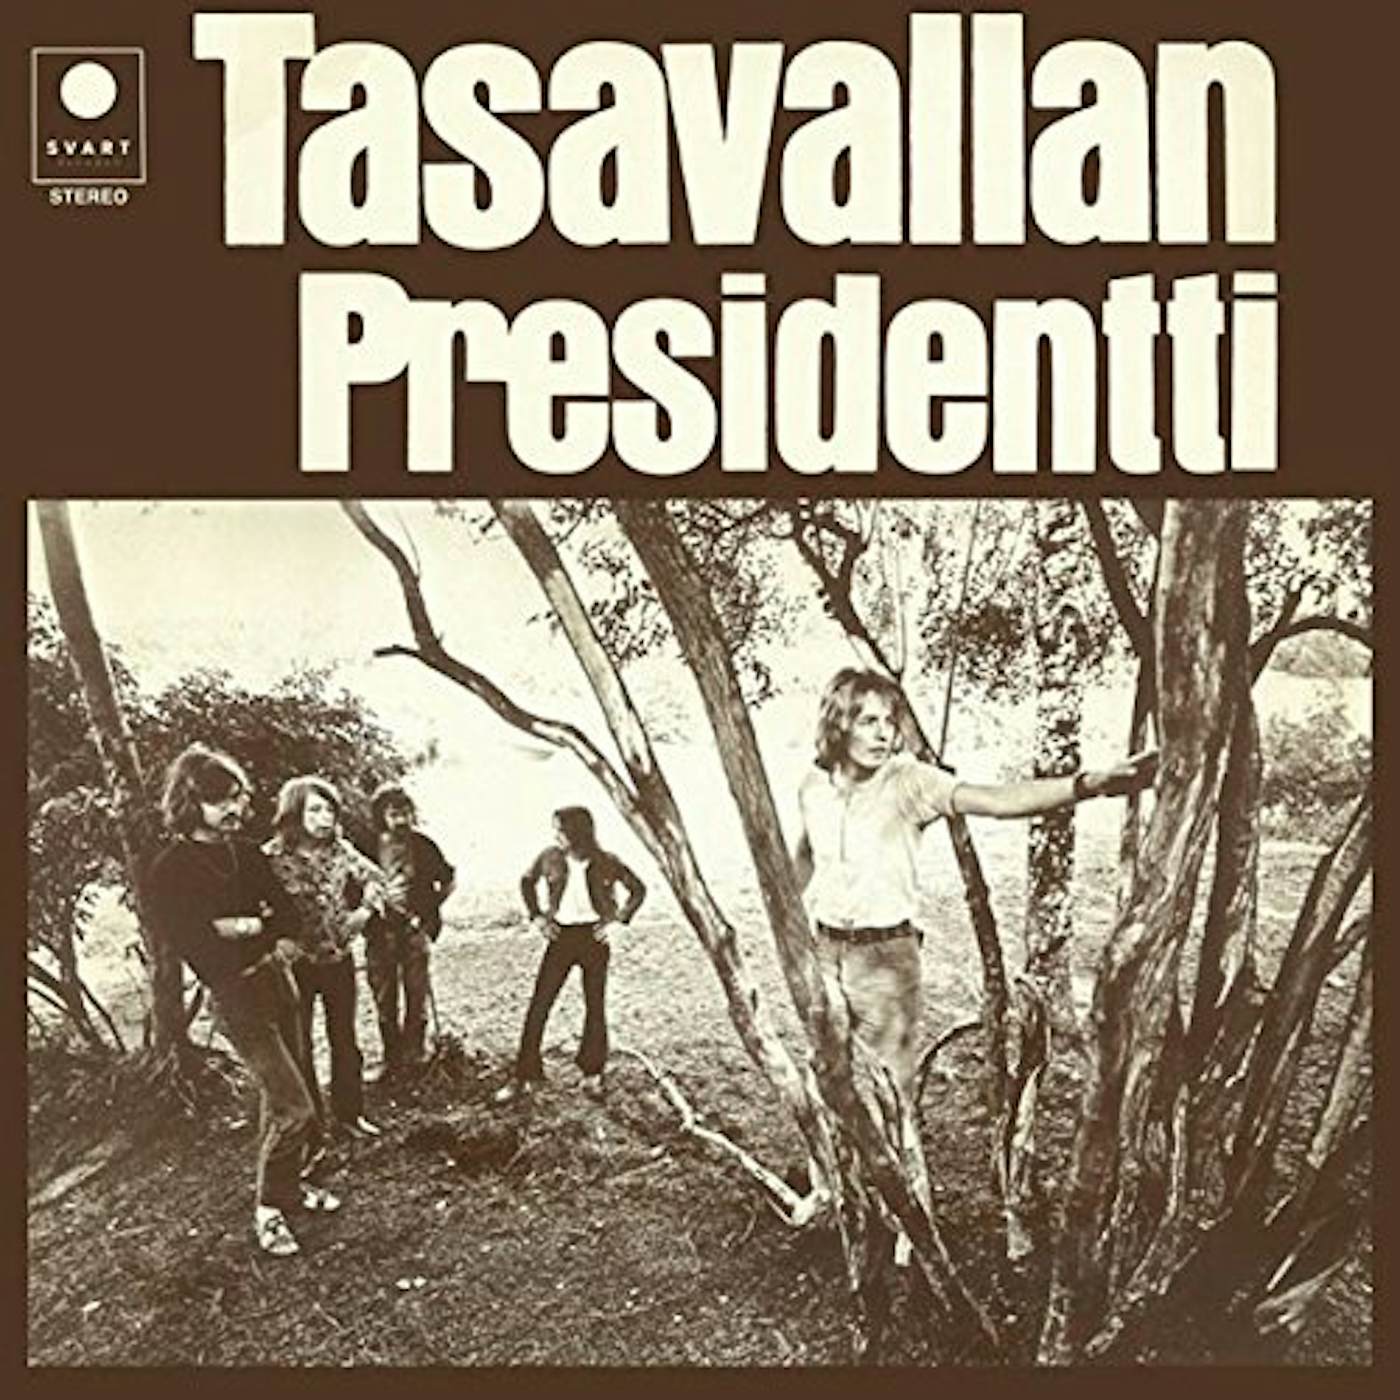 Tasavallan Presidentti II Vinyl Record